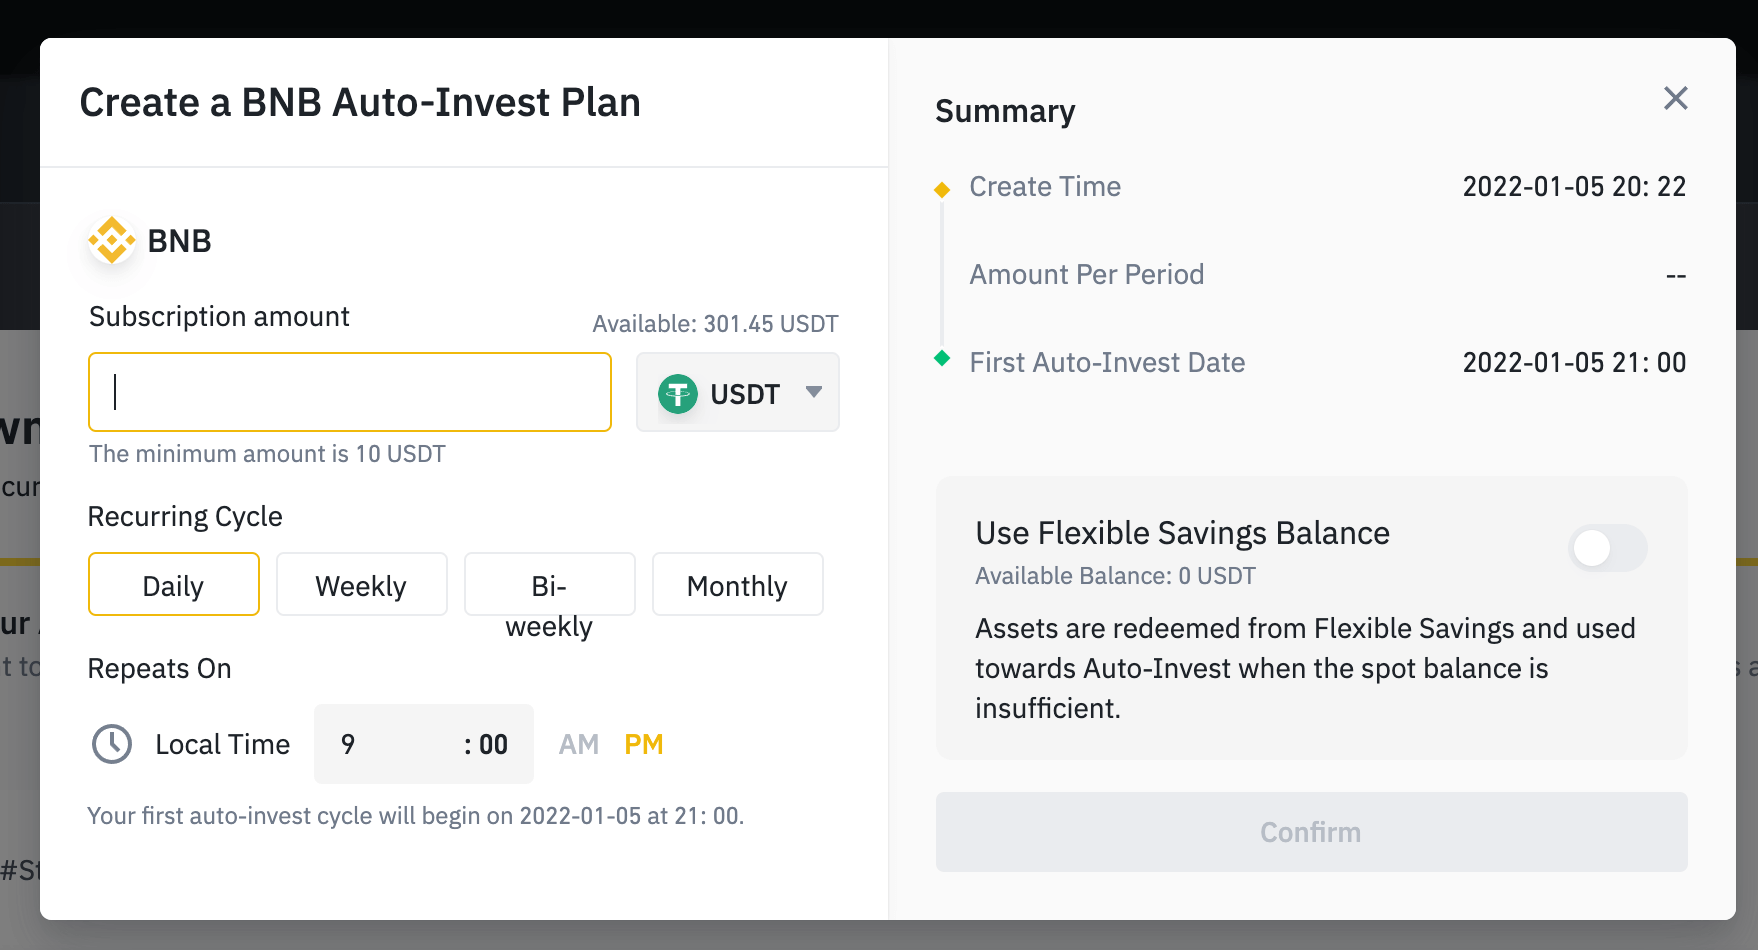 Das Beispiel zeigt die Konfiguration für einen BNB Auto-Invest Plan. Als Mindestbetrag sind 10 USDT angegeben. Der Investitionsabstand kann zwischen Daily, Weekly, Biweekly und Monthly gewählt werden.